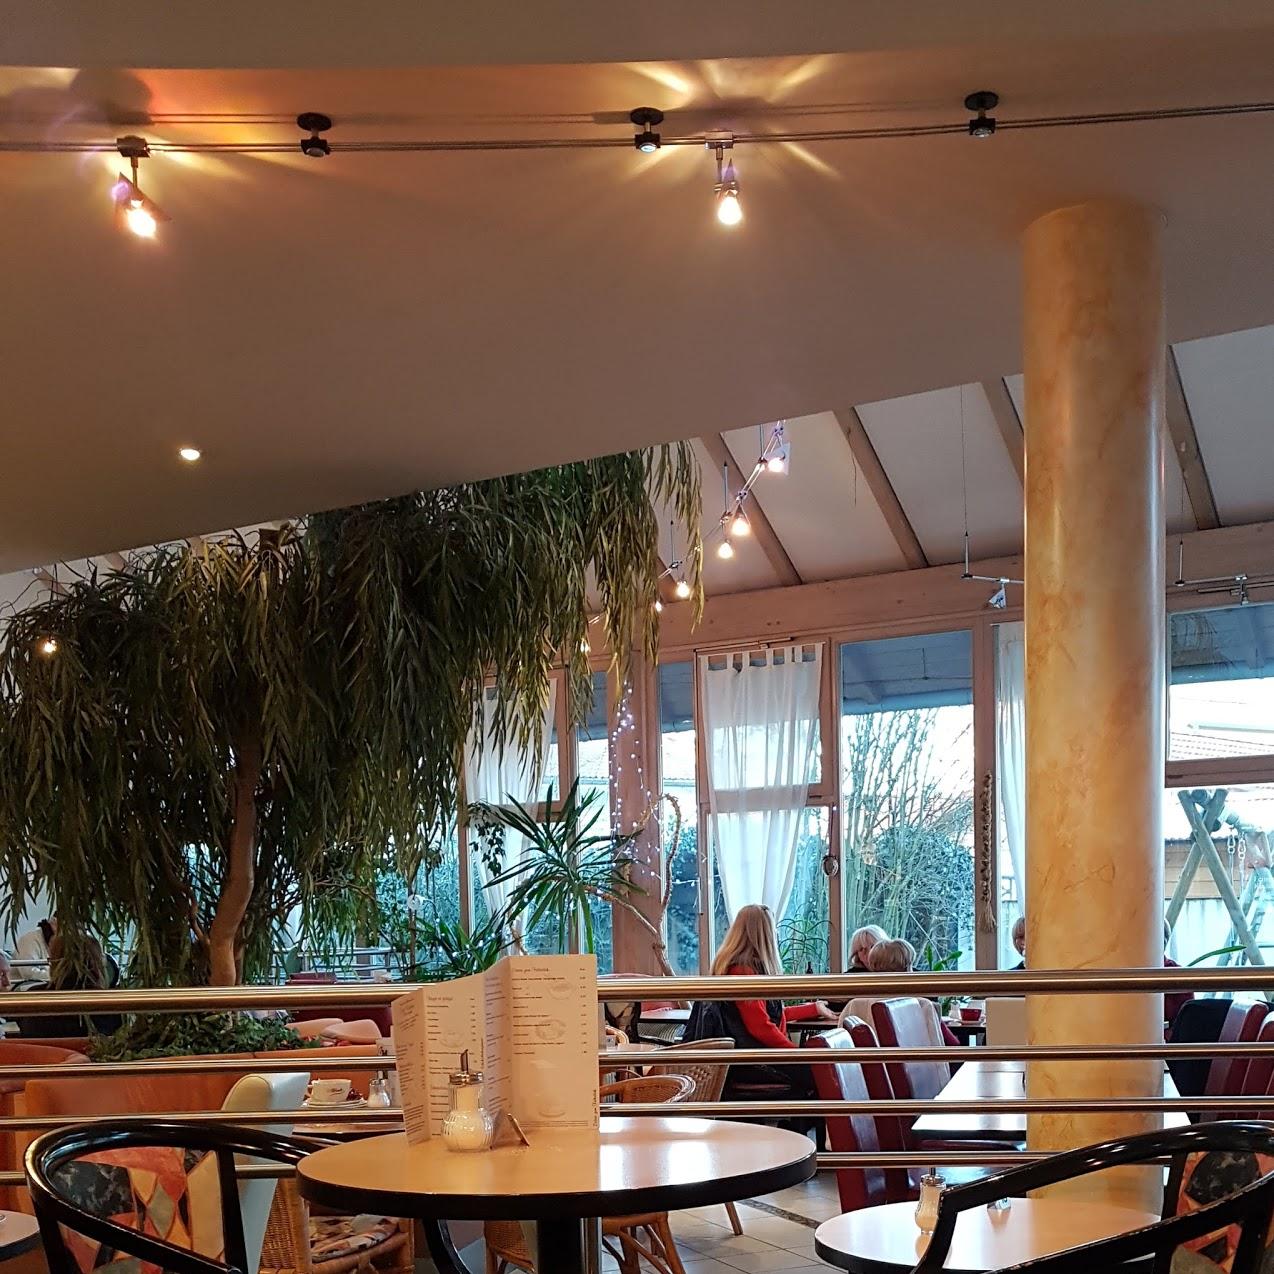 Restaurant "Café Regner" in Neustadt an der Donau